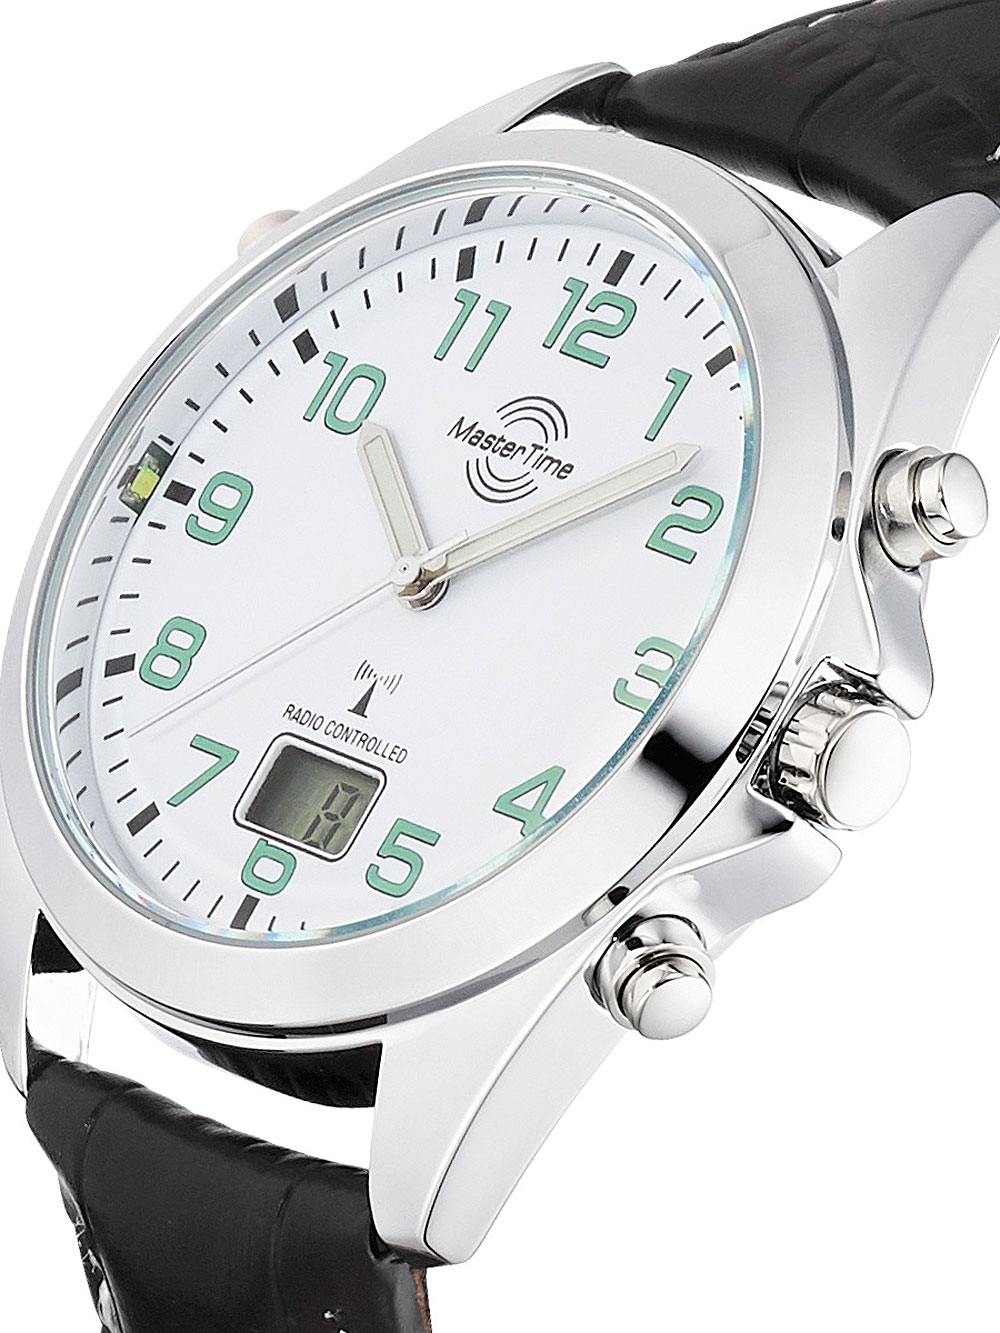 Мужские наручные часы Time брендовые ROZETKA: отзывы, в в Украине на купить Киеве, Master часы цены